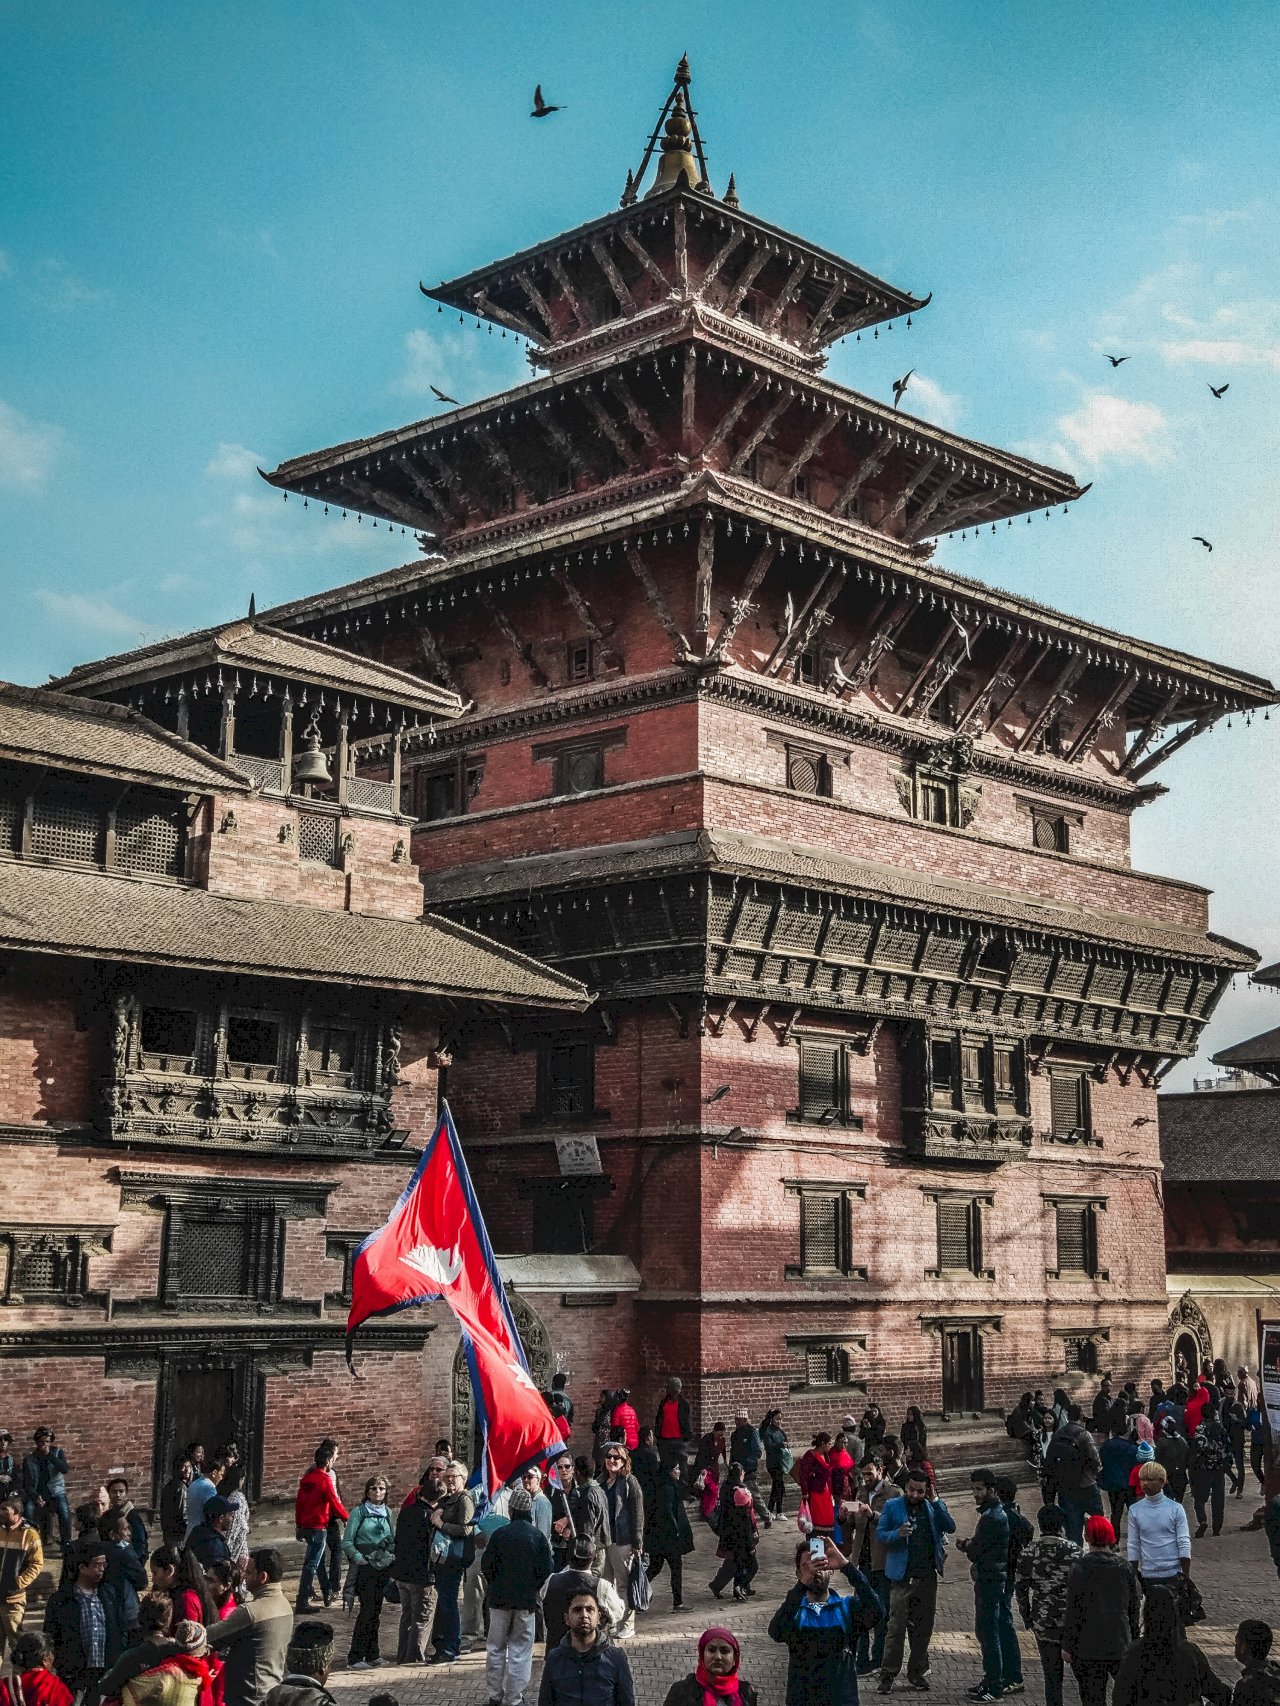 避外匯危機 尼泊爾禁外國酒與電視進口